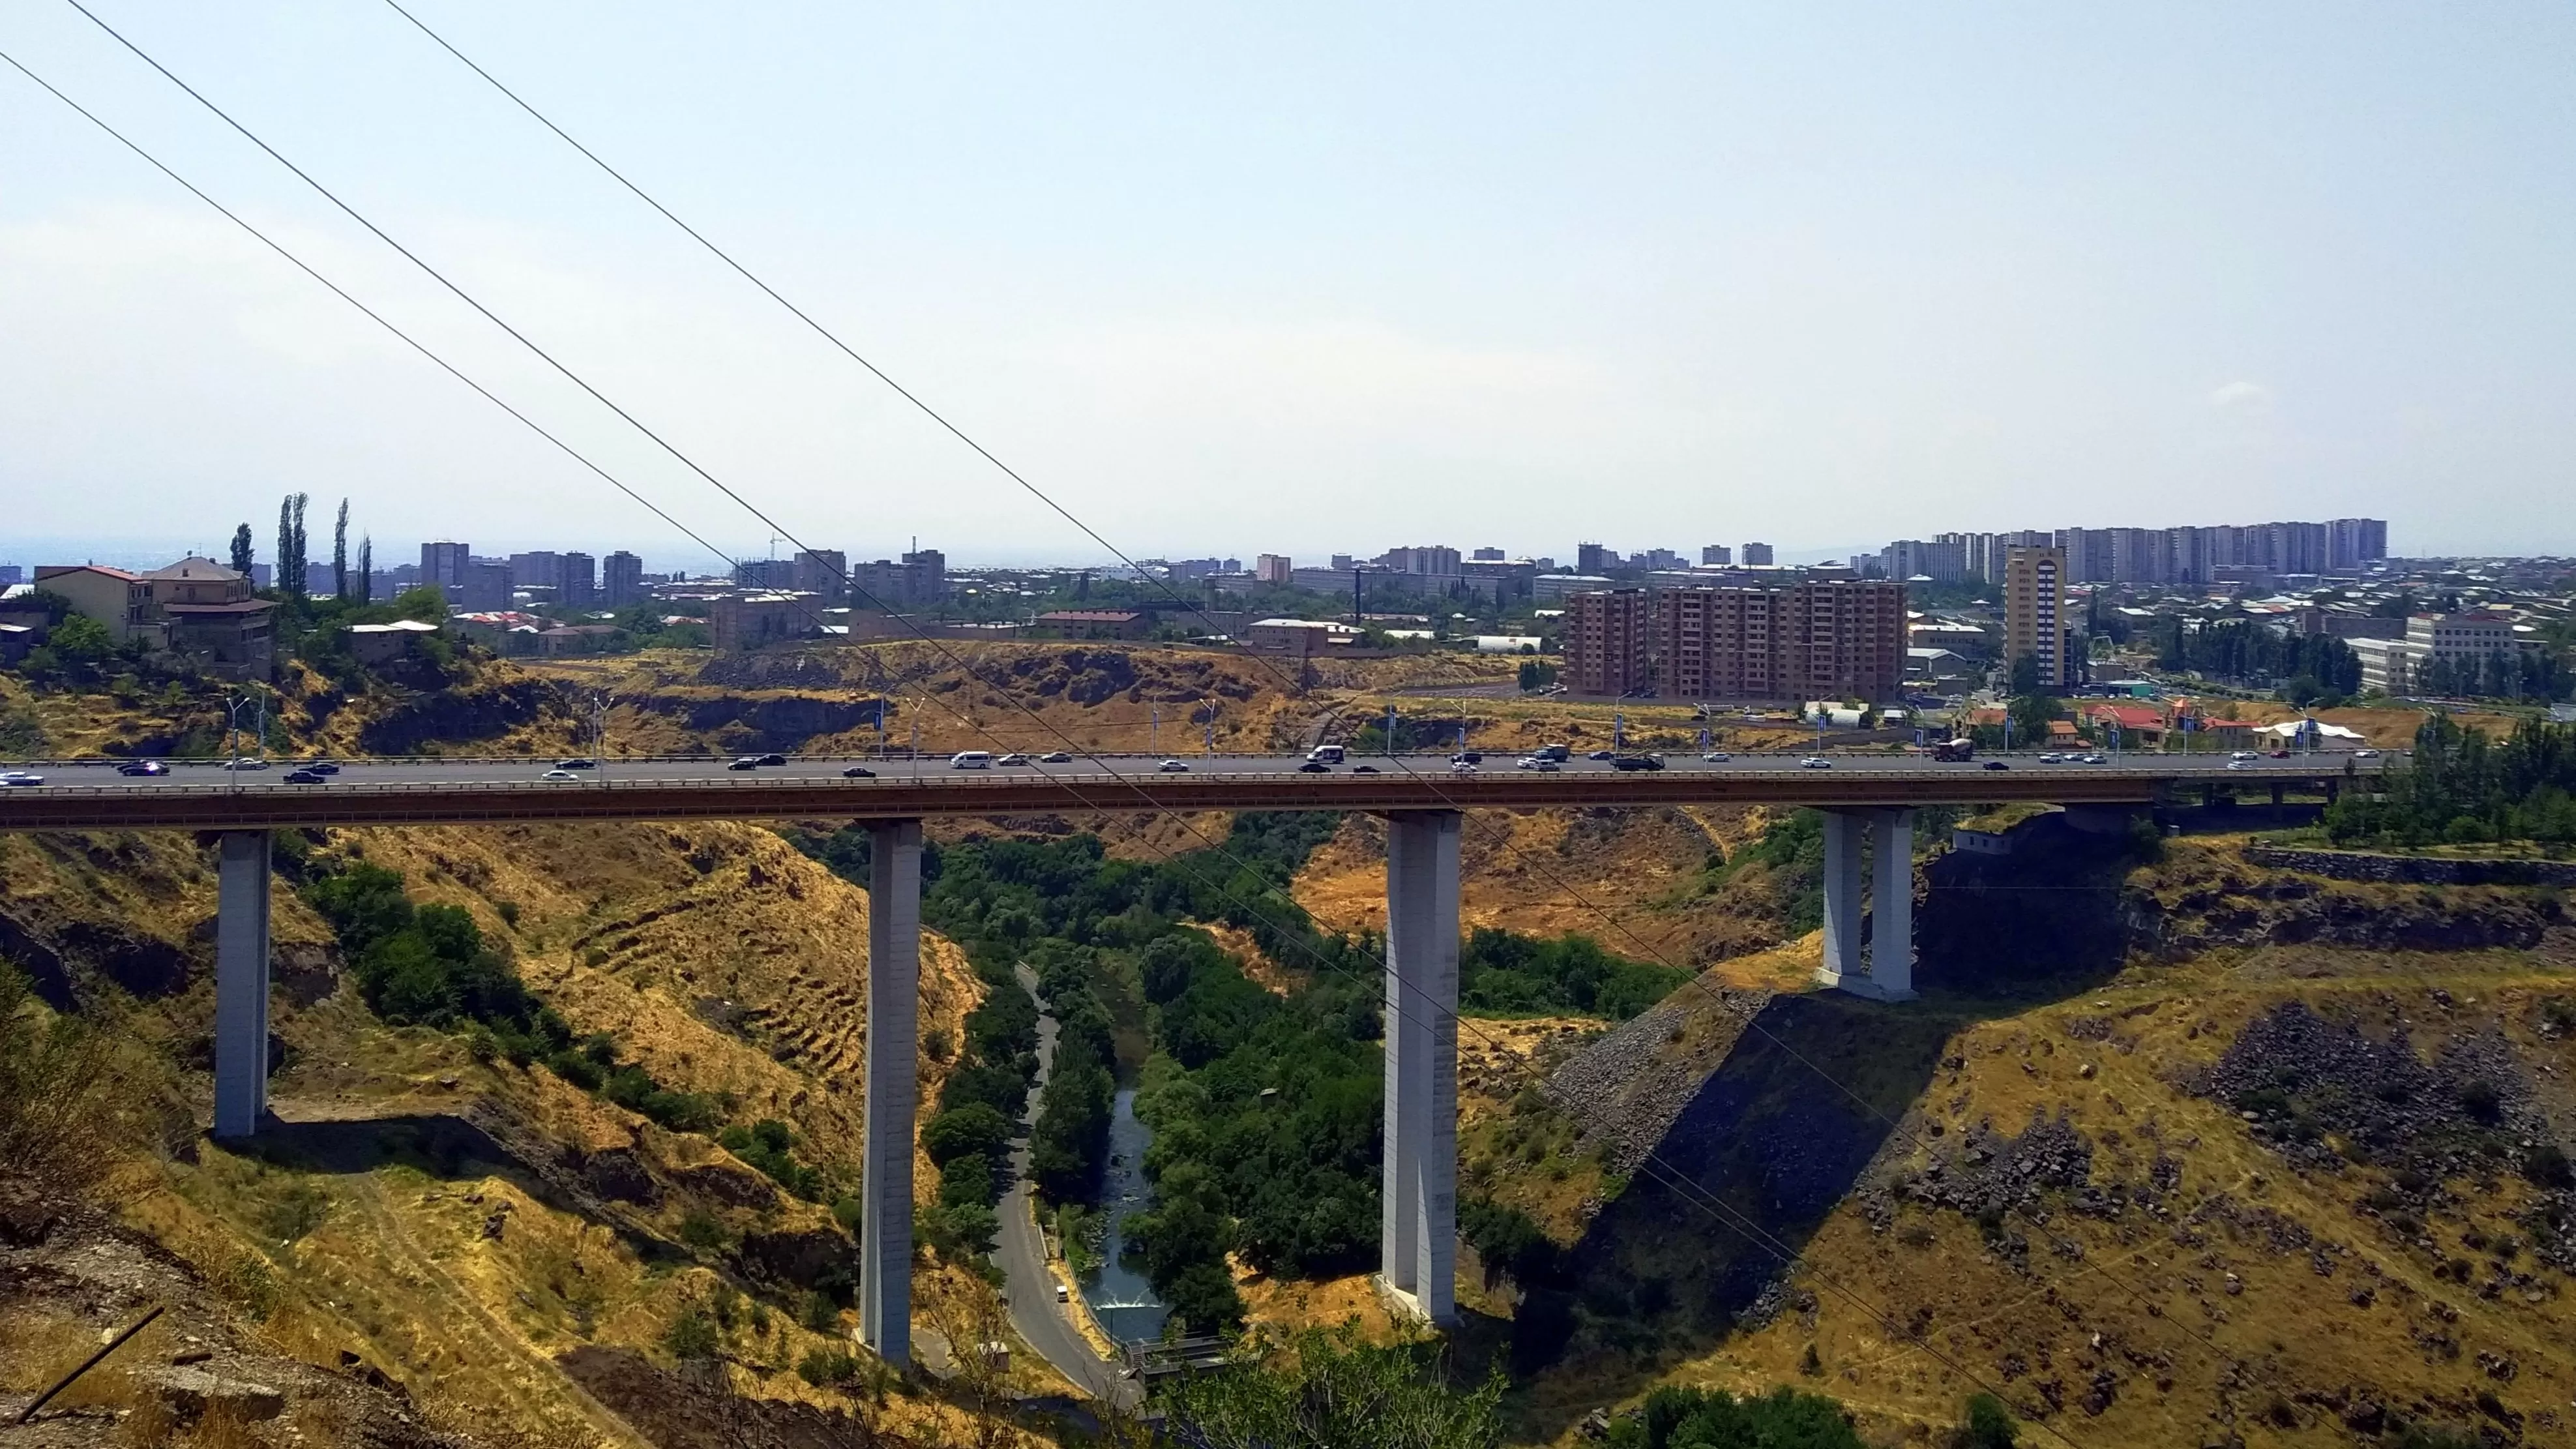 Կանխվել է Դավթաշենի կամրջից քաղաքացու ինքնասպանության փորձը